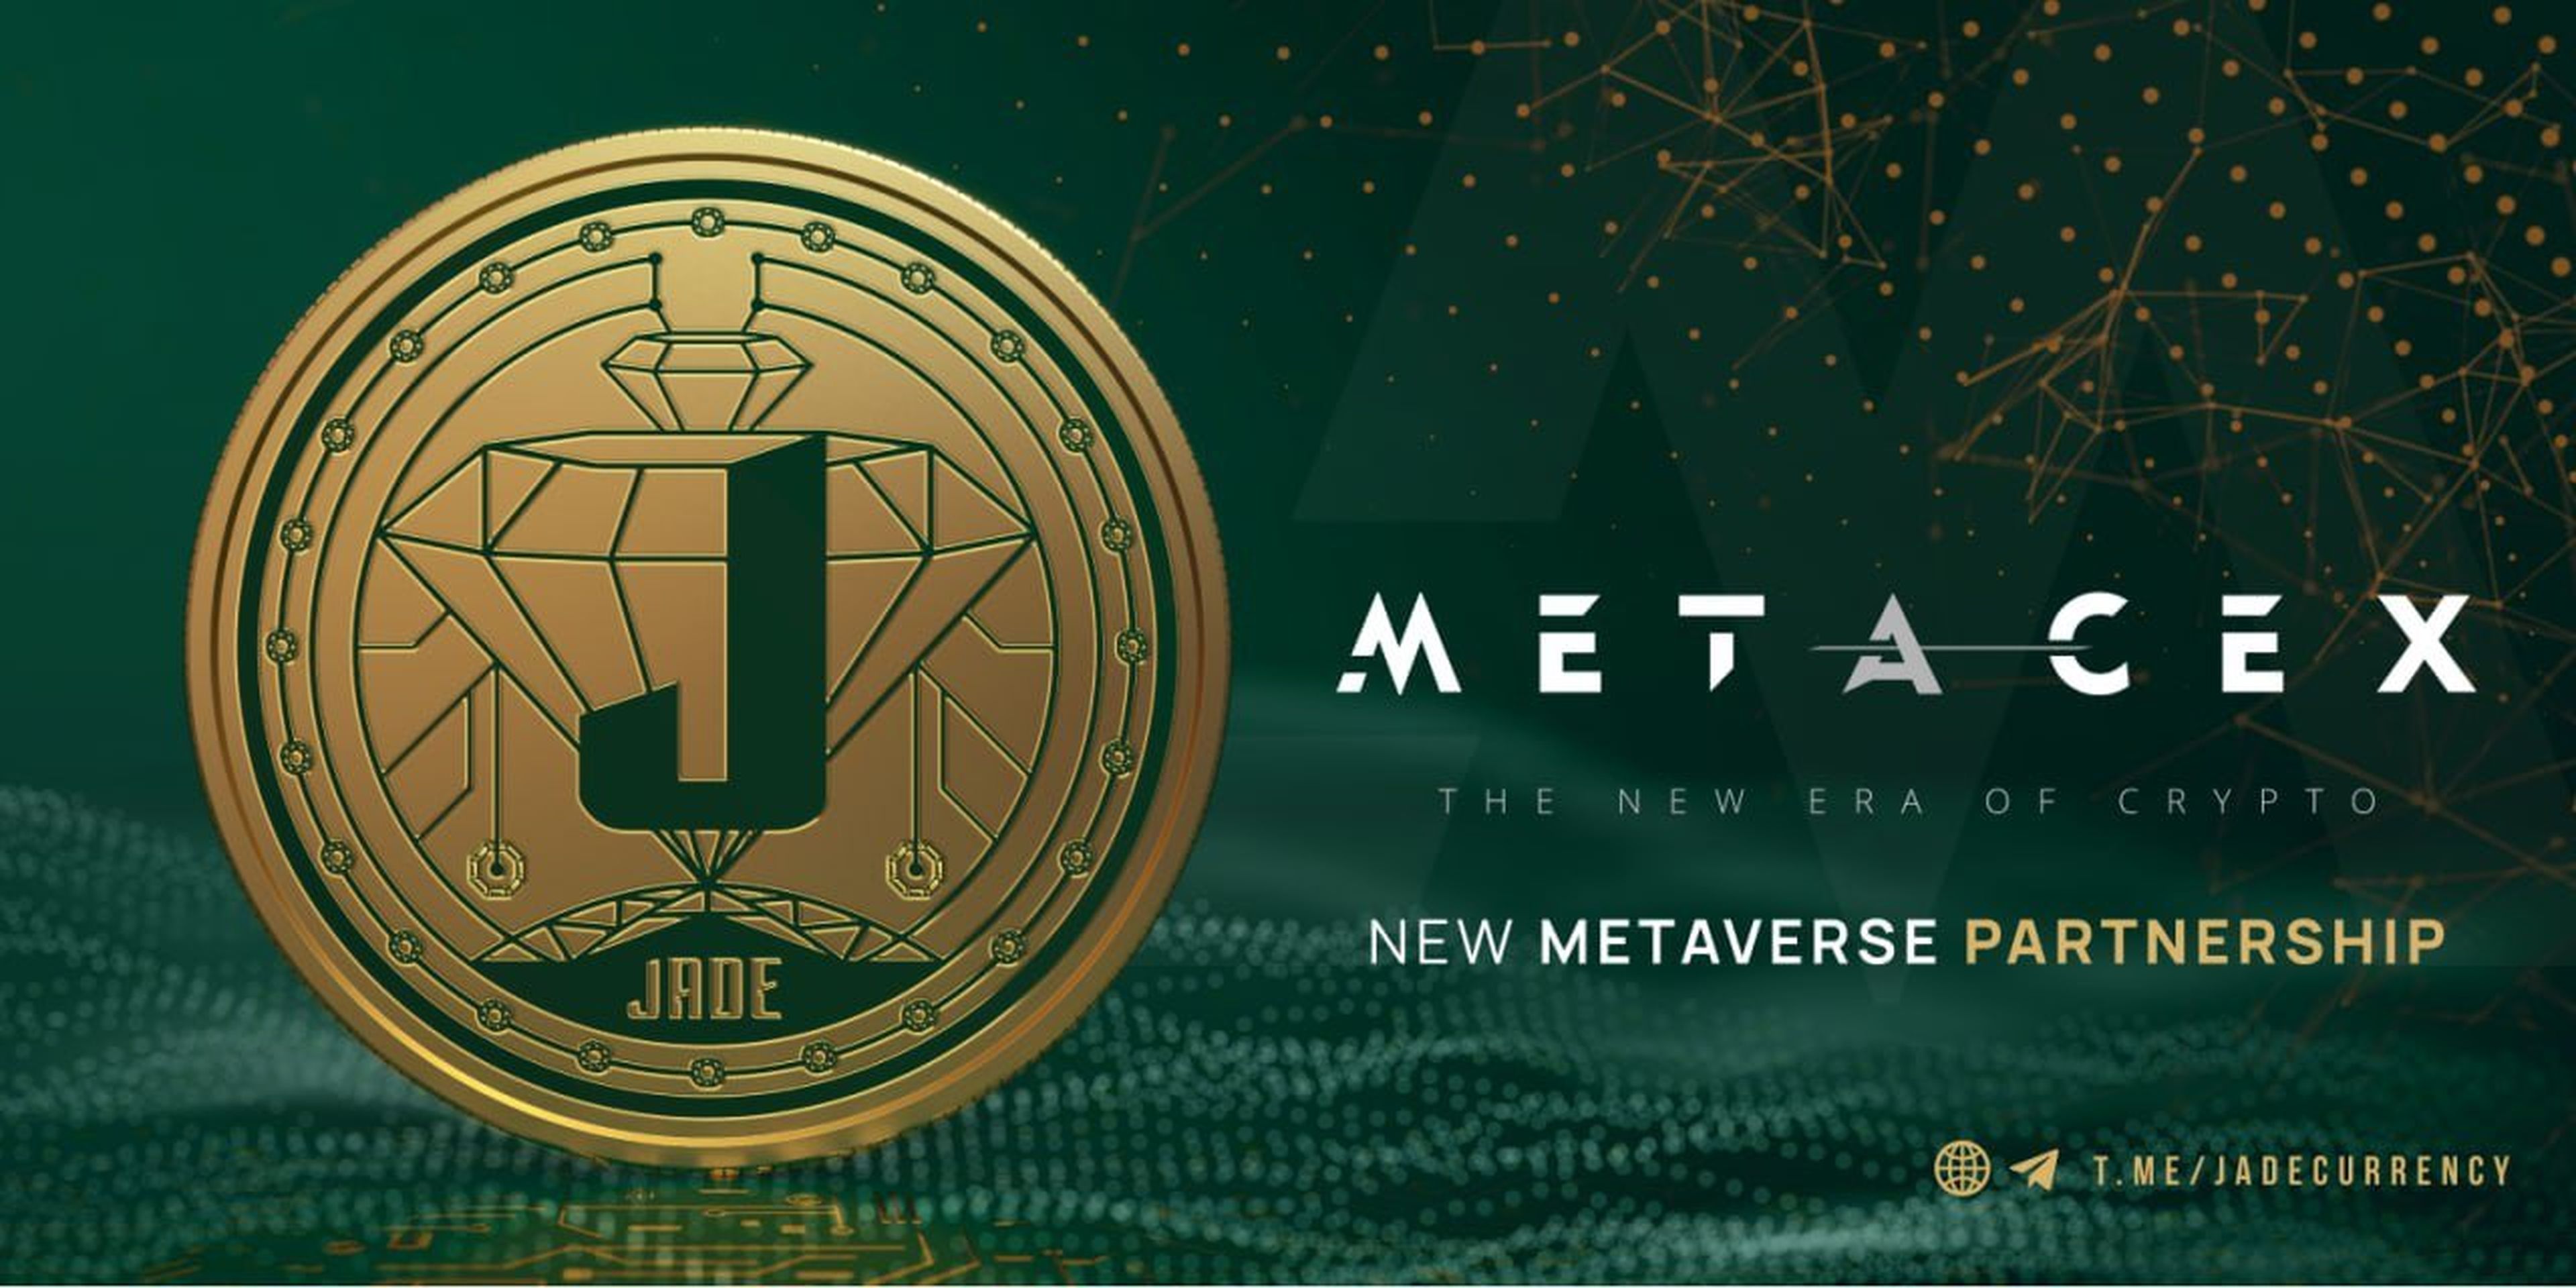 Imagen del exchange del metaverso MetaCex, con el que JADE está asociado.